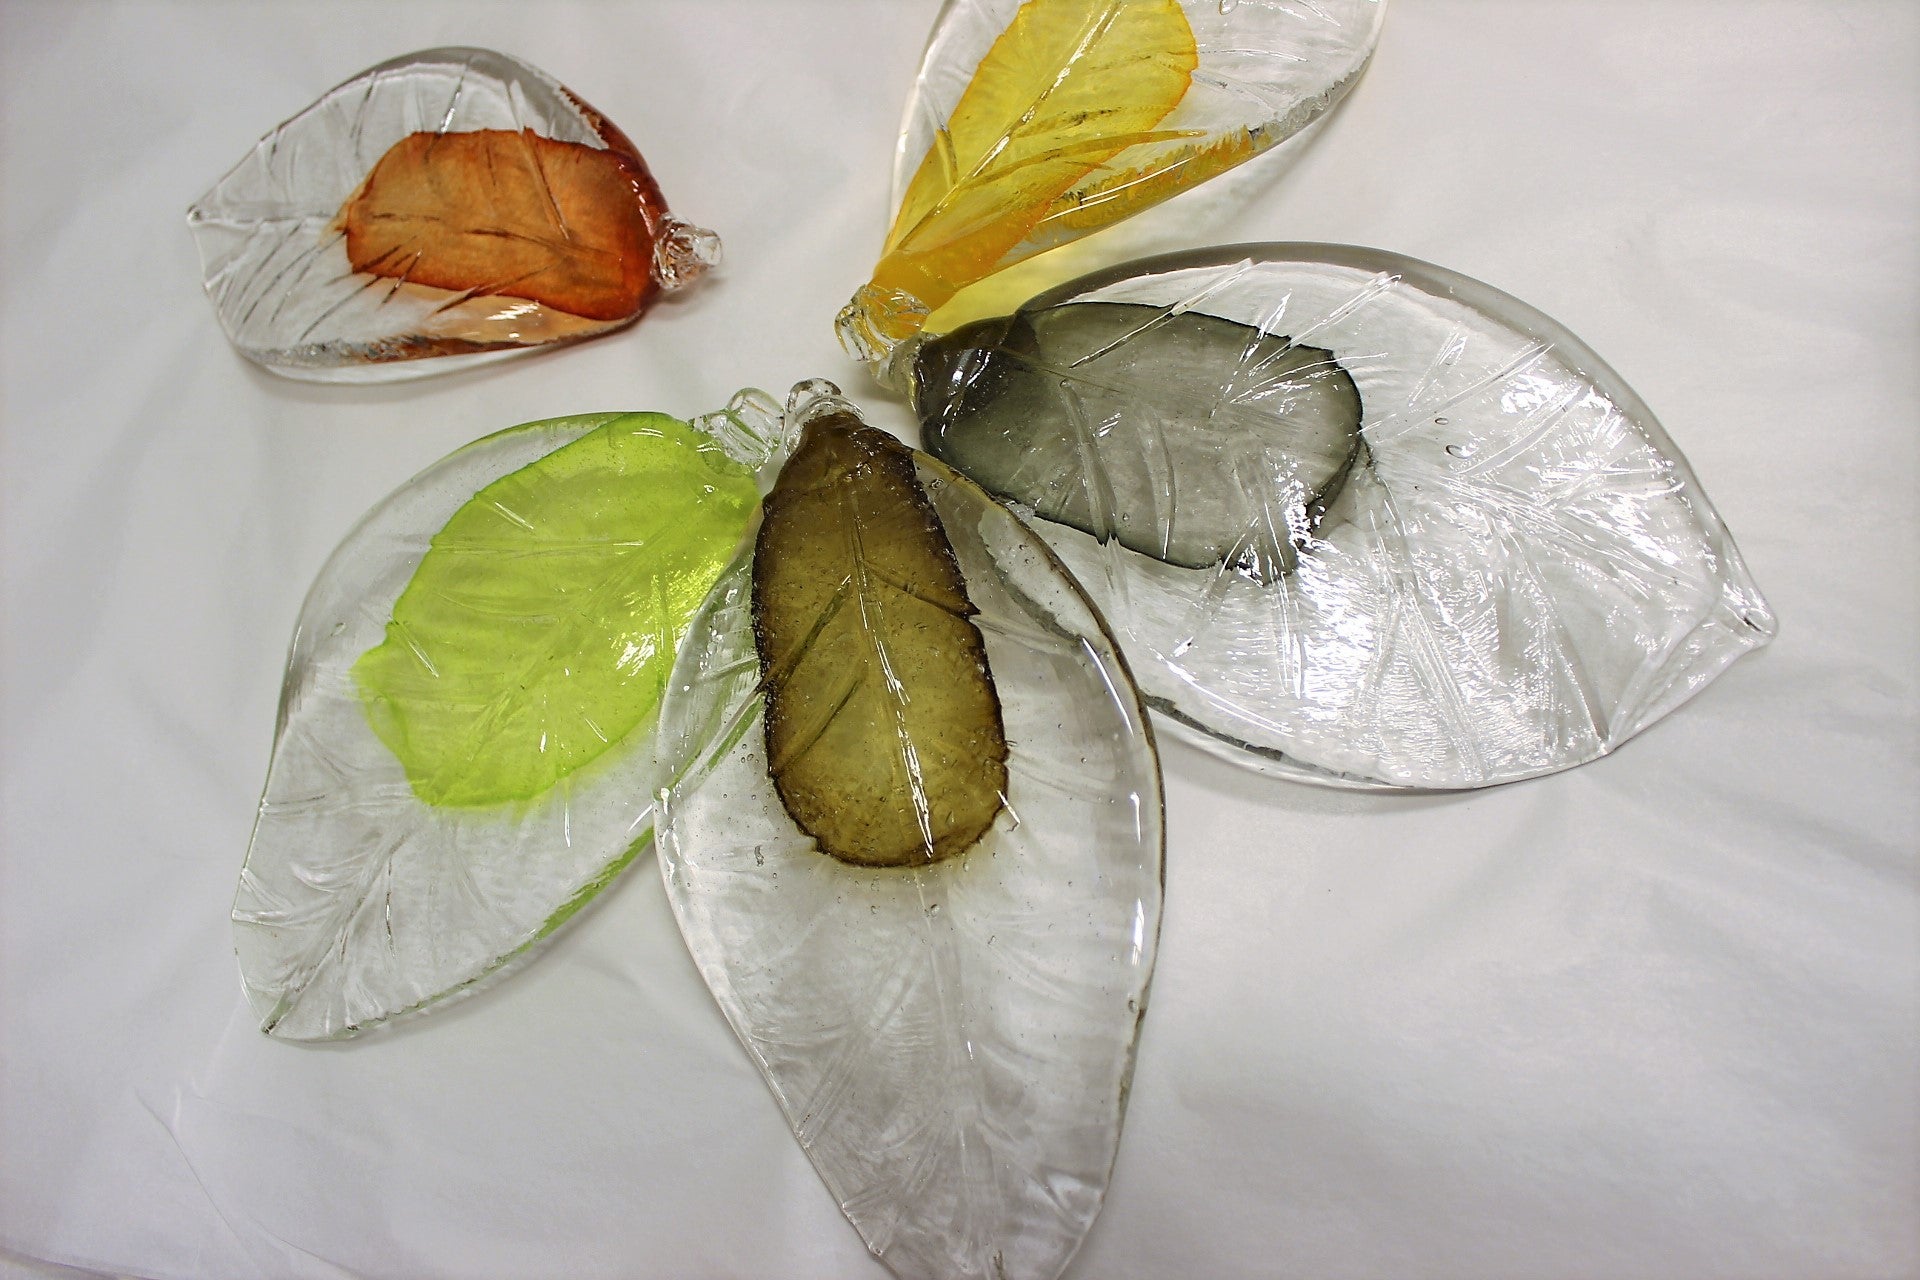 Fönstersmycke, Löv, Glas, 18 cm - Heta Hyttan